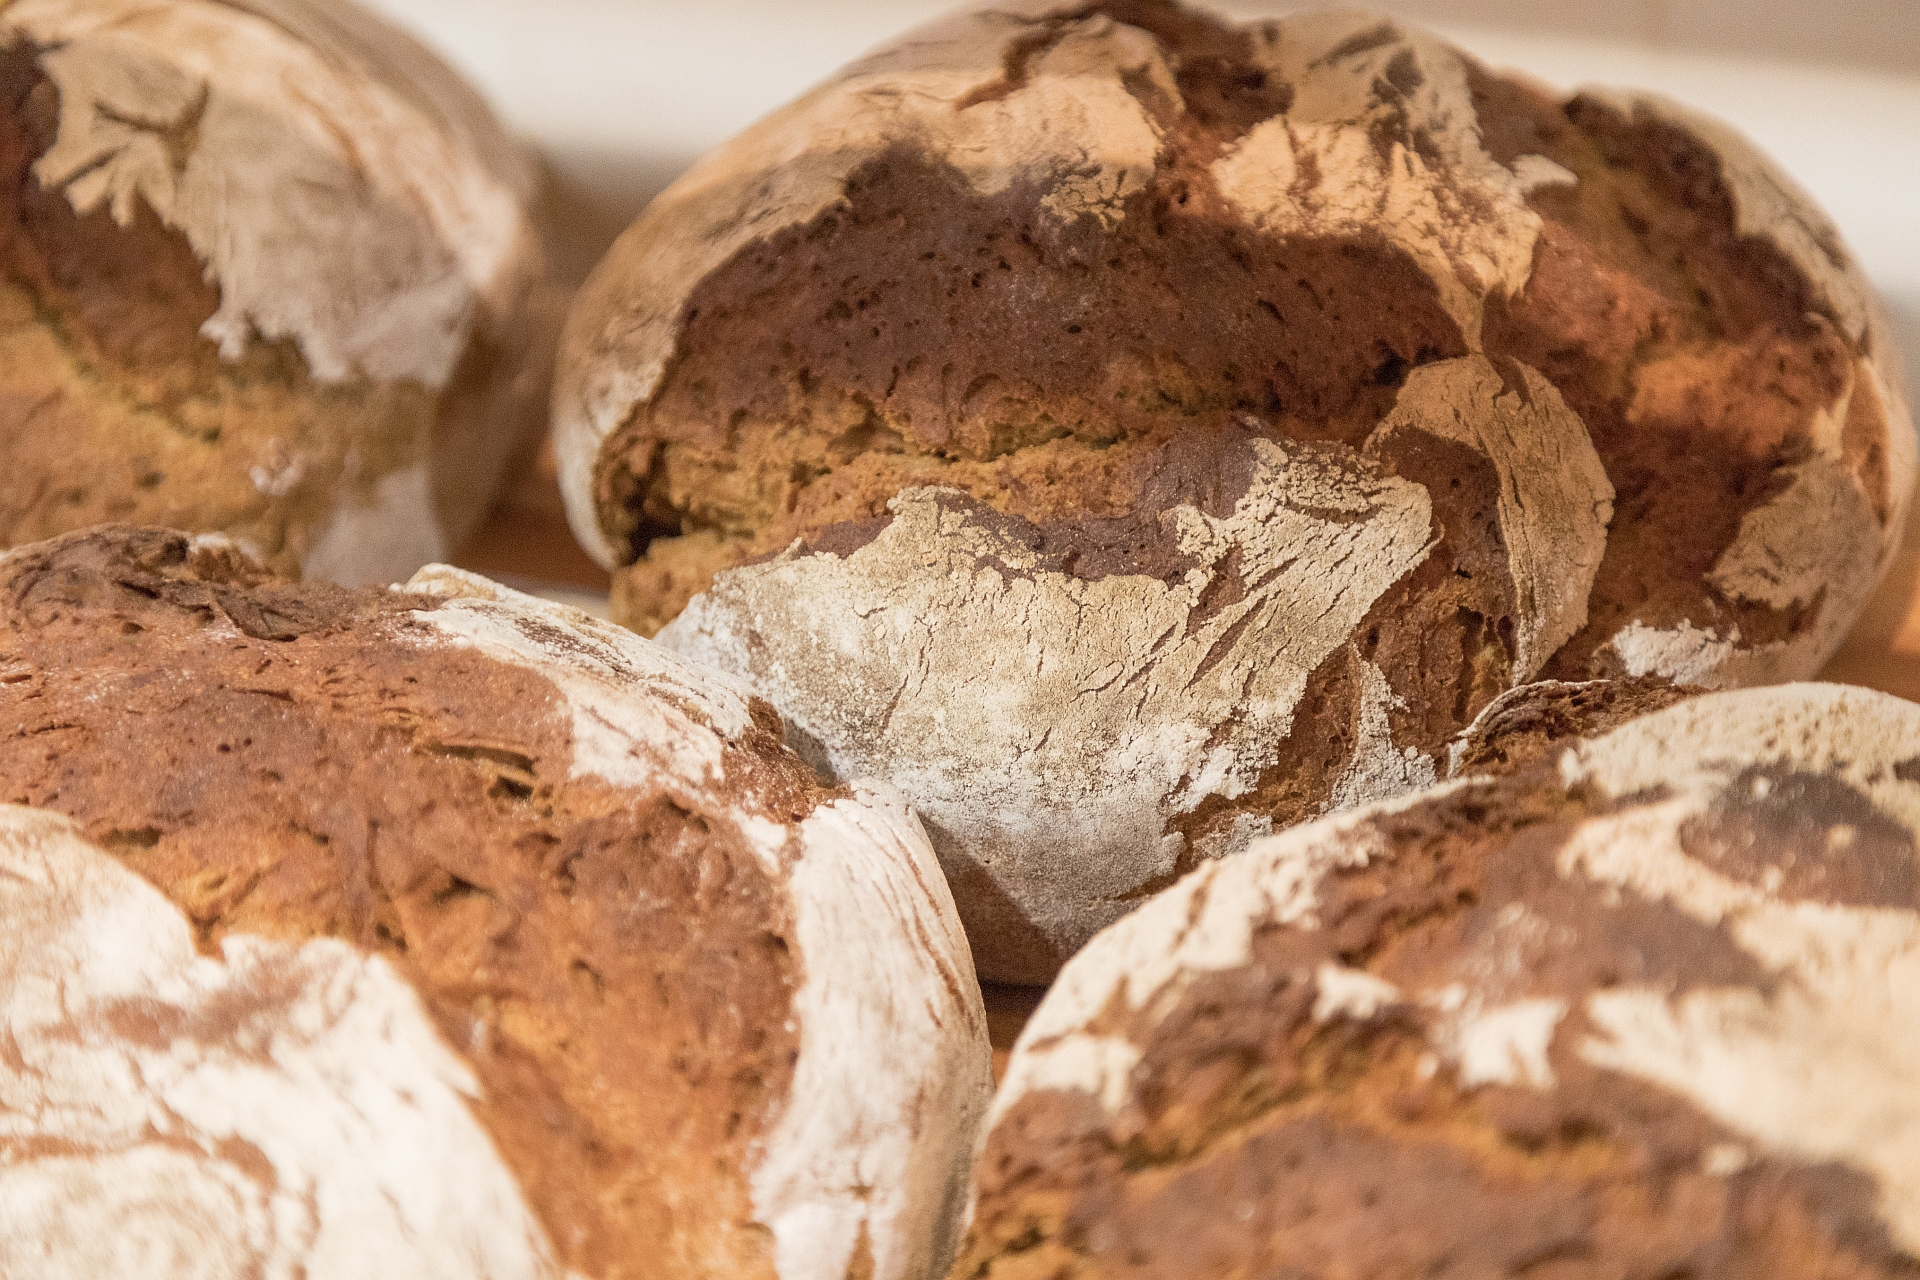 Auf dem GenussKulturMarkt des Museums KulturLand Ries stehen besondere Brote zum Kauf bereit.